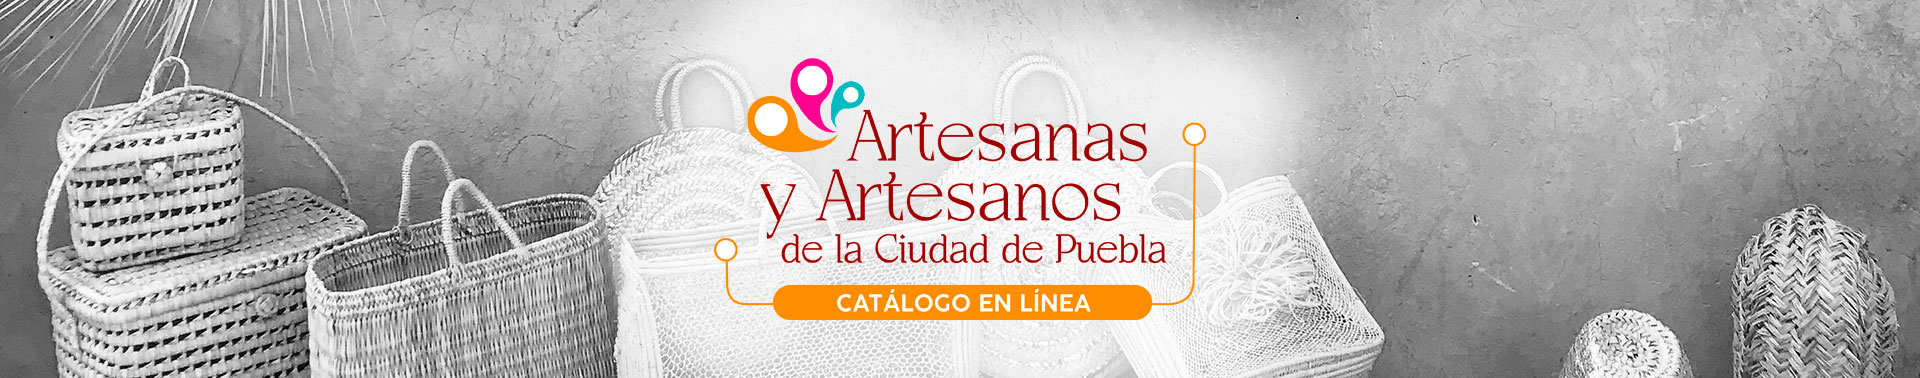 Logo Artesanas y Artesanos de la Ciudad de Puebla